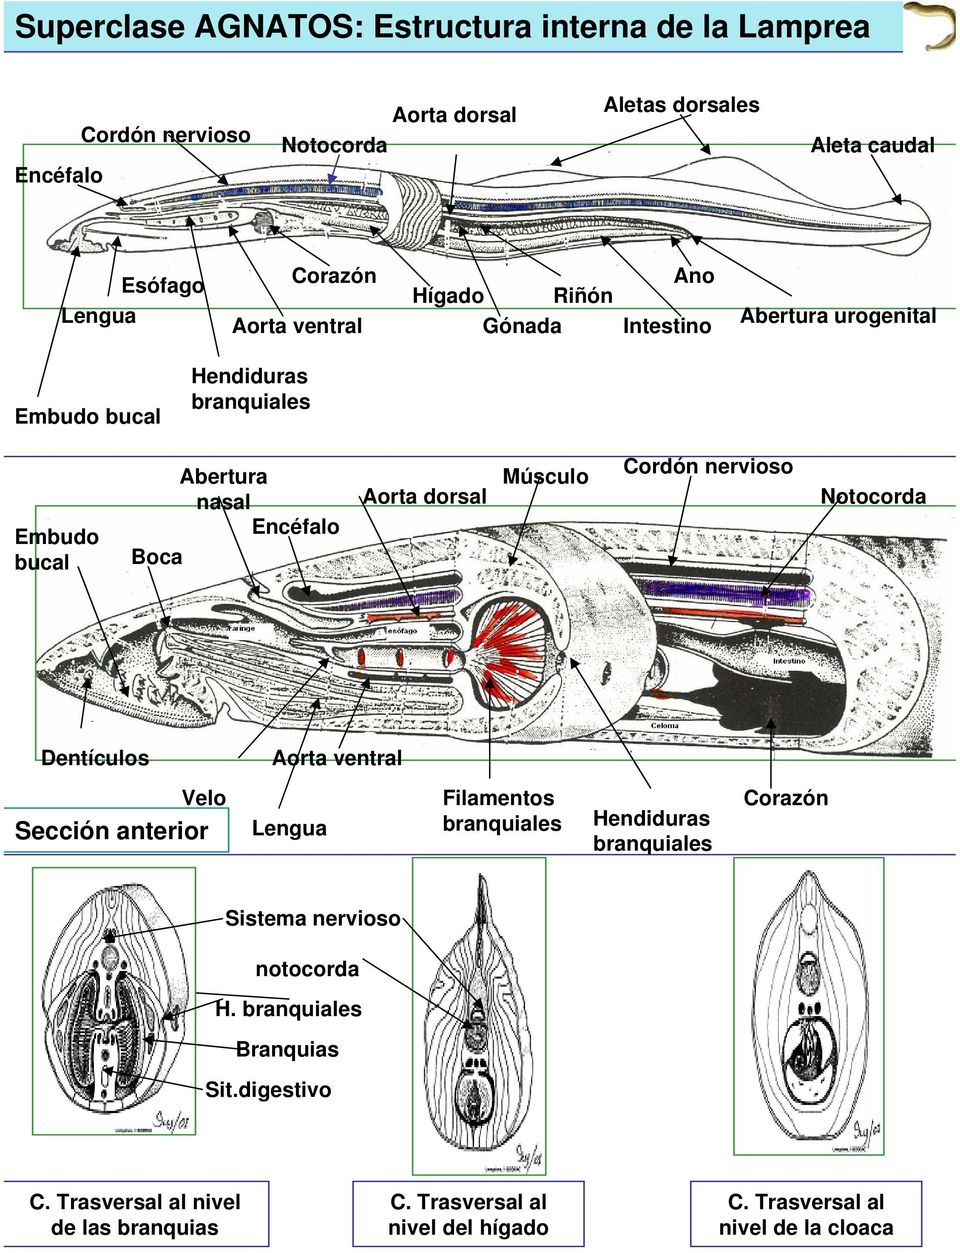 Aorta dorsal Músculo Cordón nervioso Notocorda Dentículos Aorta ventral Velo Sección anterior Lengua Filamentos Hendiduras Sistema nervioso